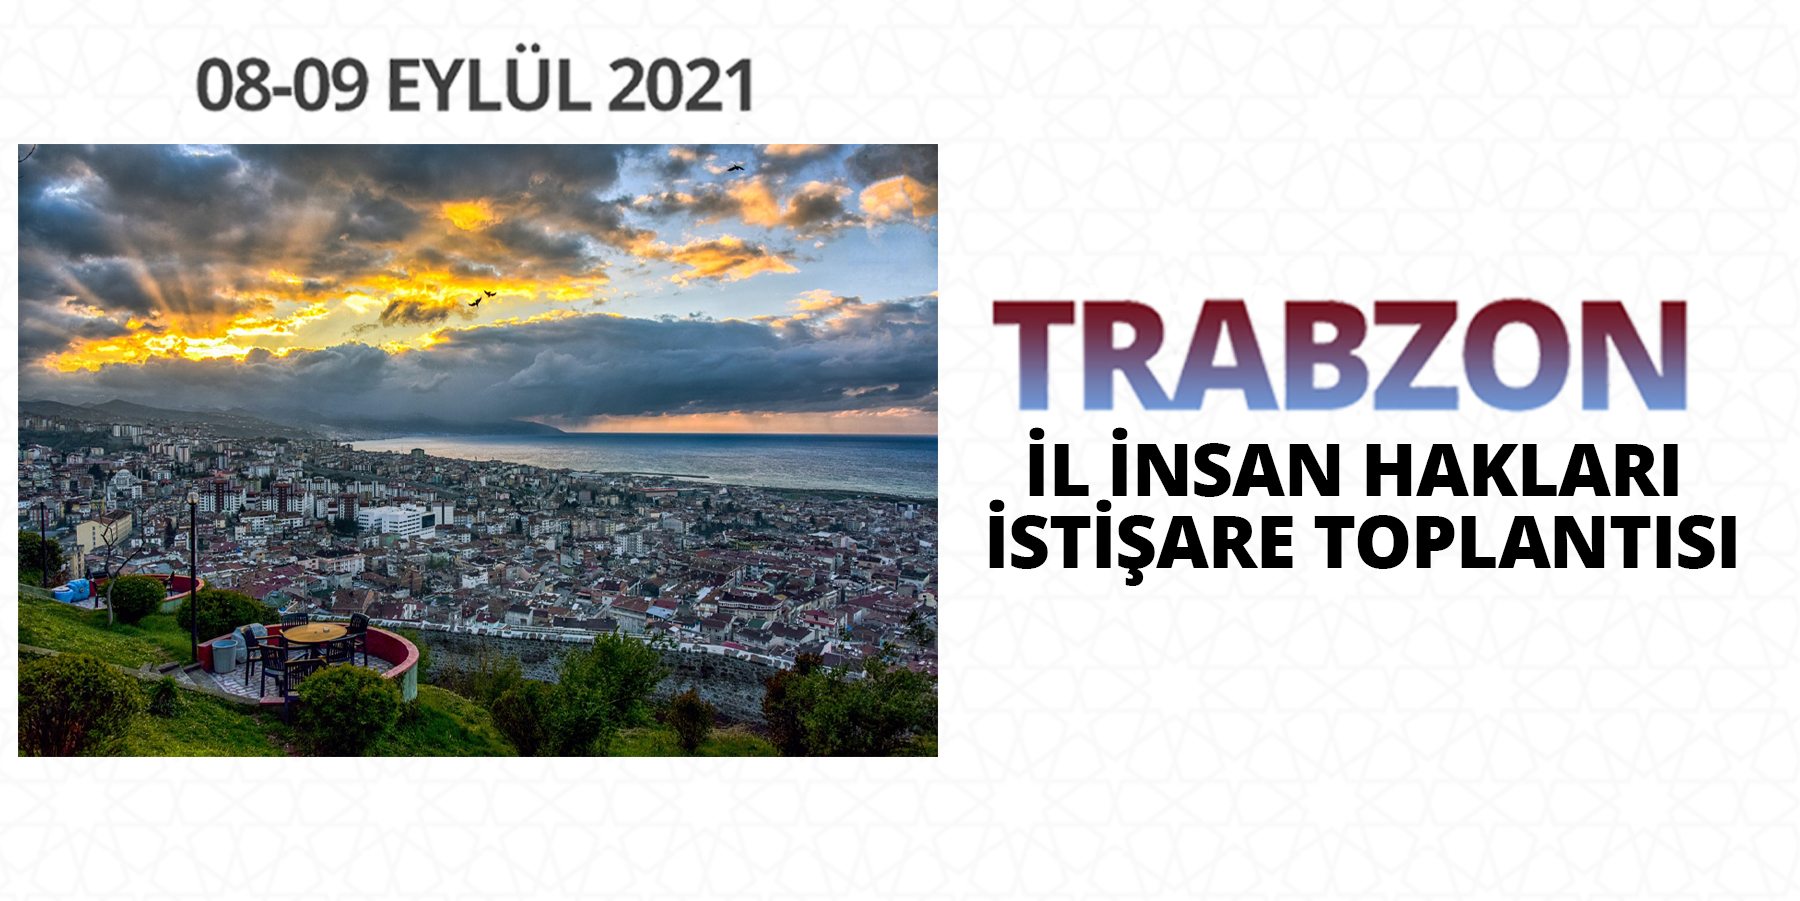 Trabzon İl İnsan Hakları İstişare Toplantısı